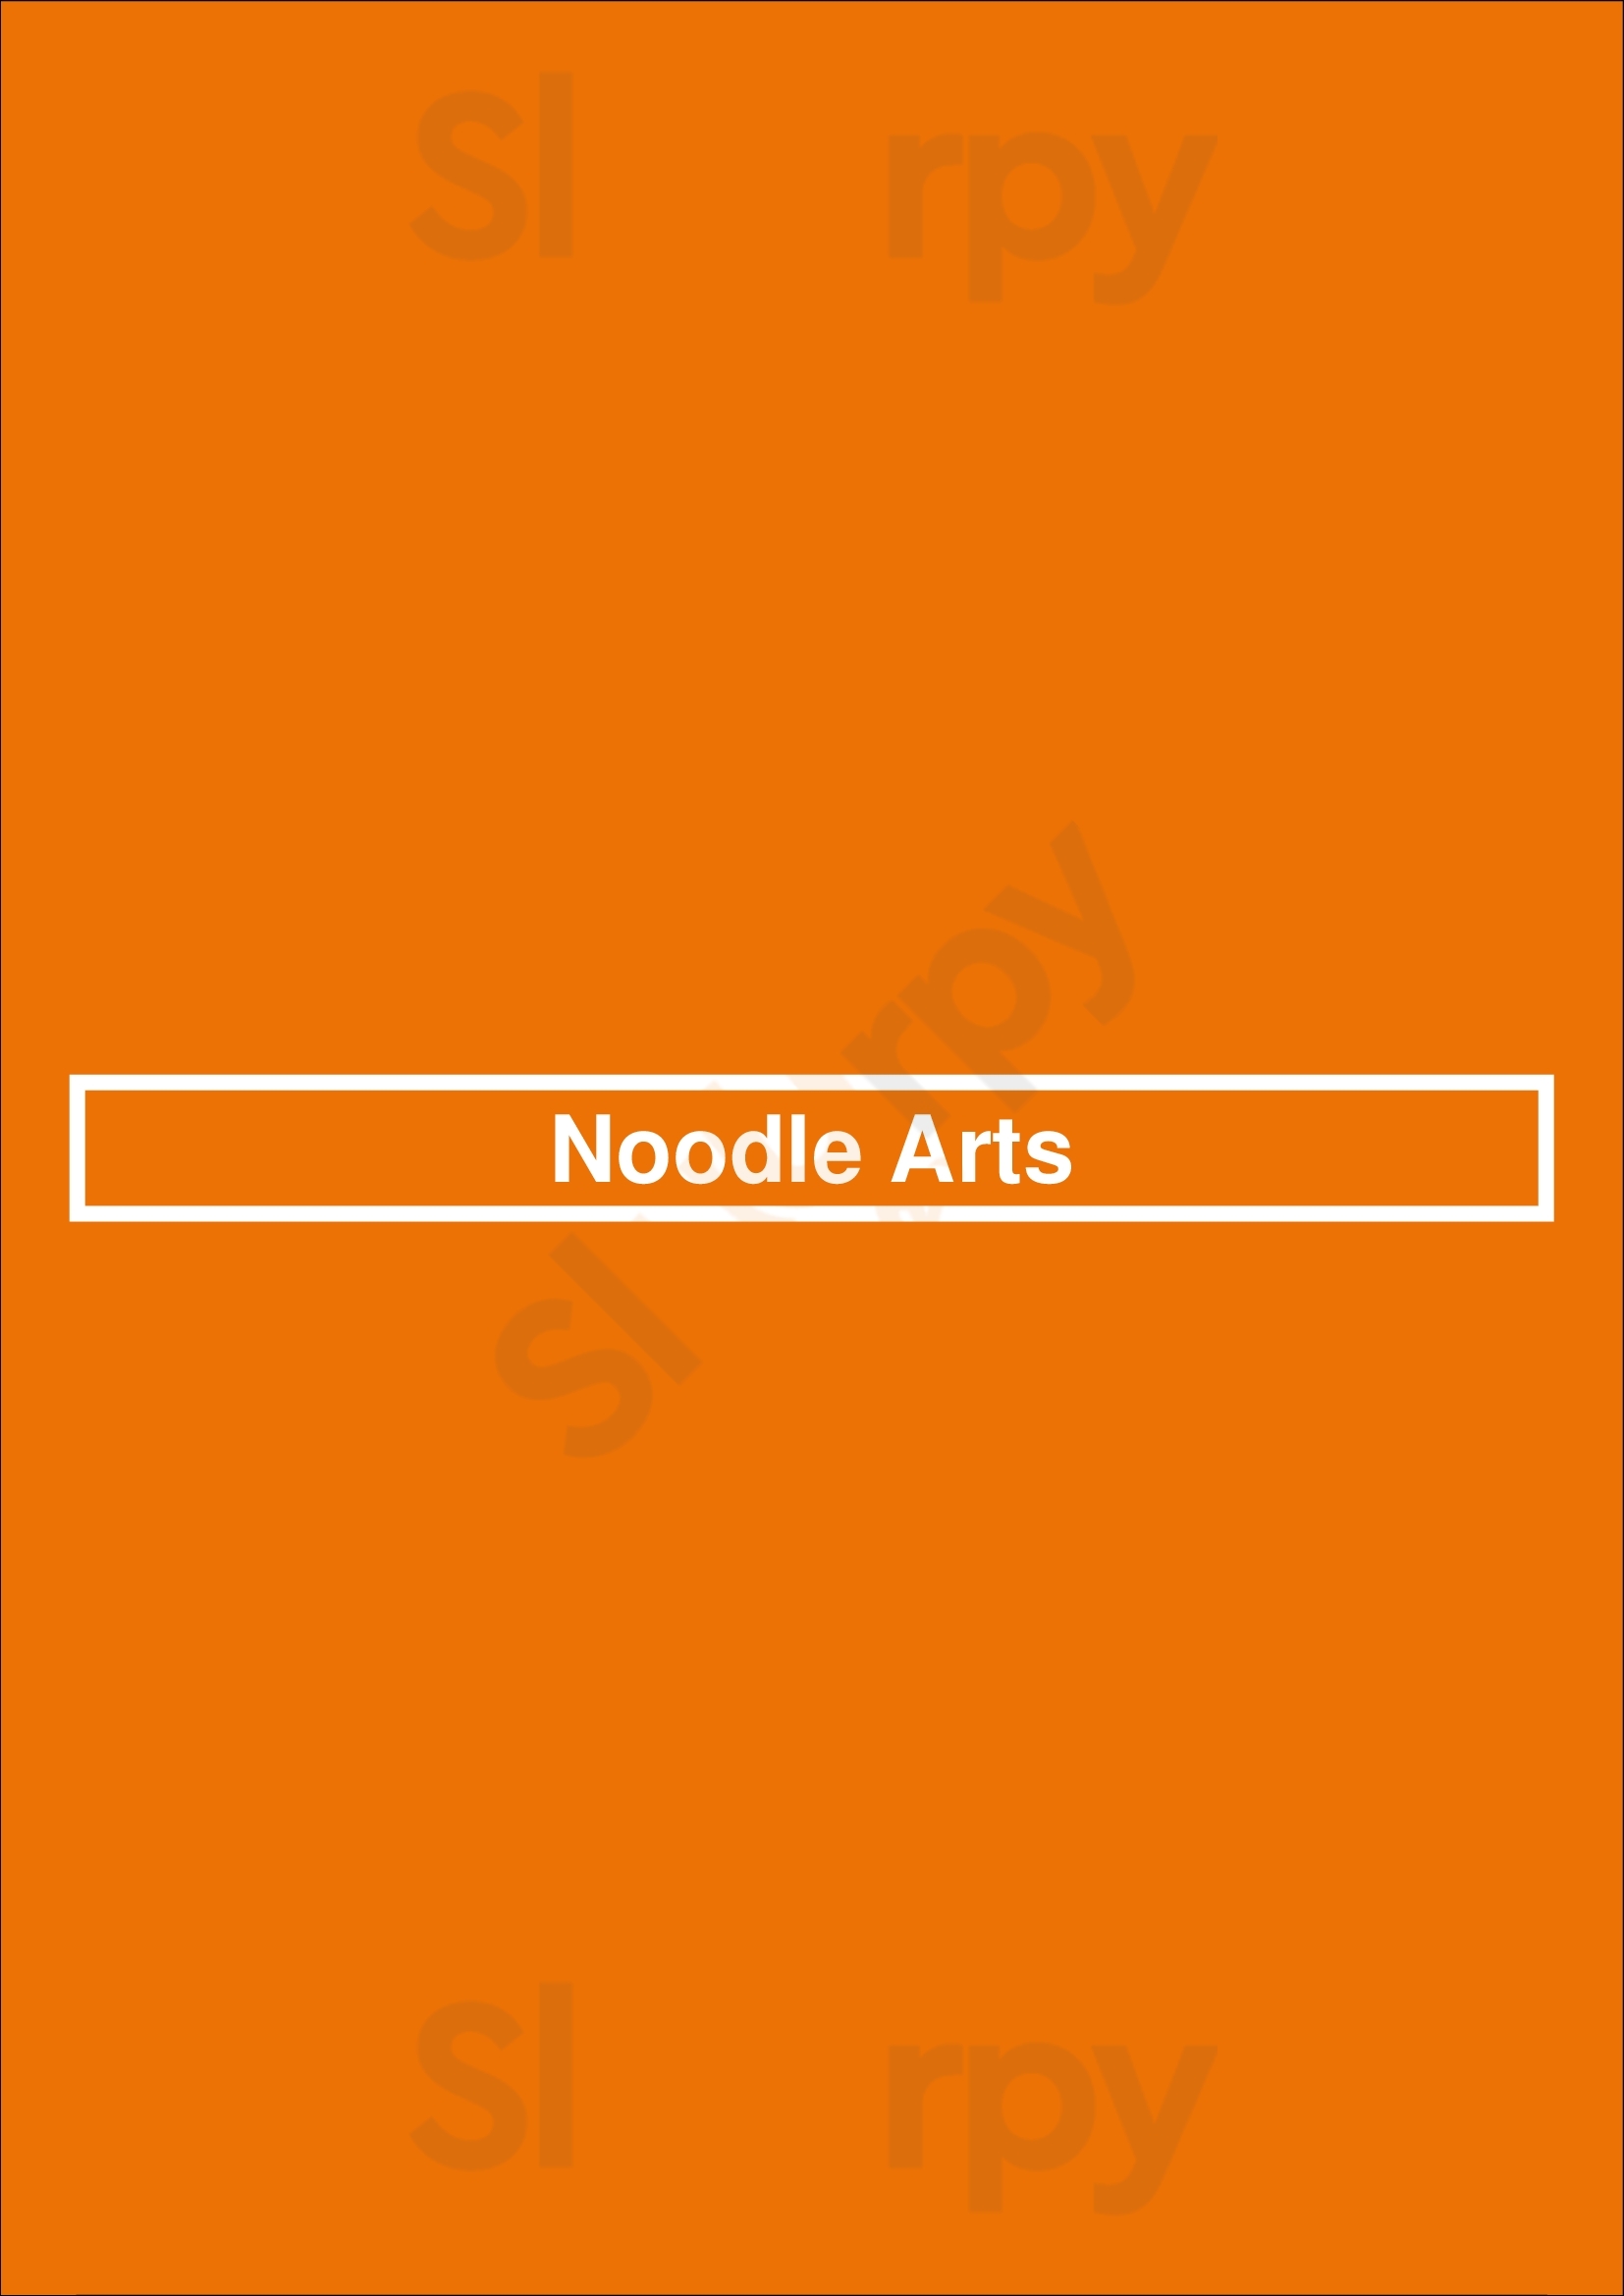 Noodle Arts Vancouver Menu - 1